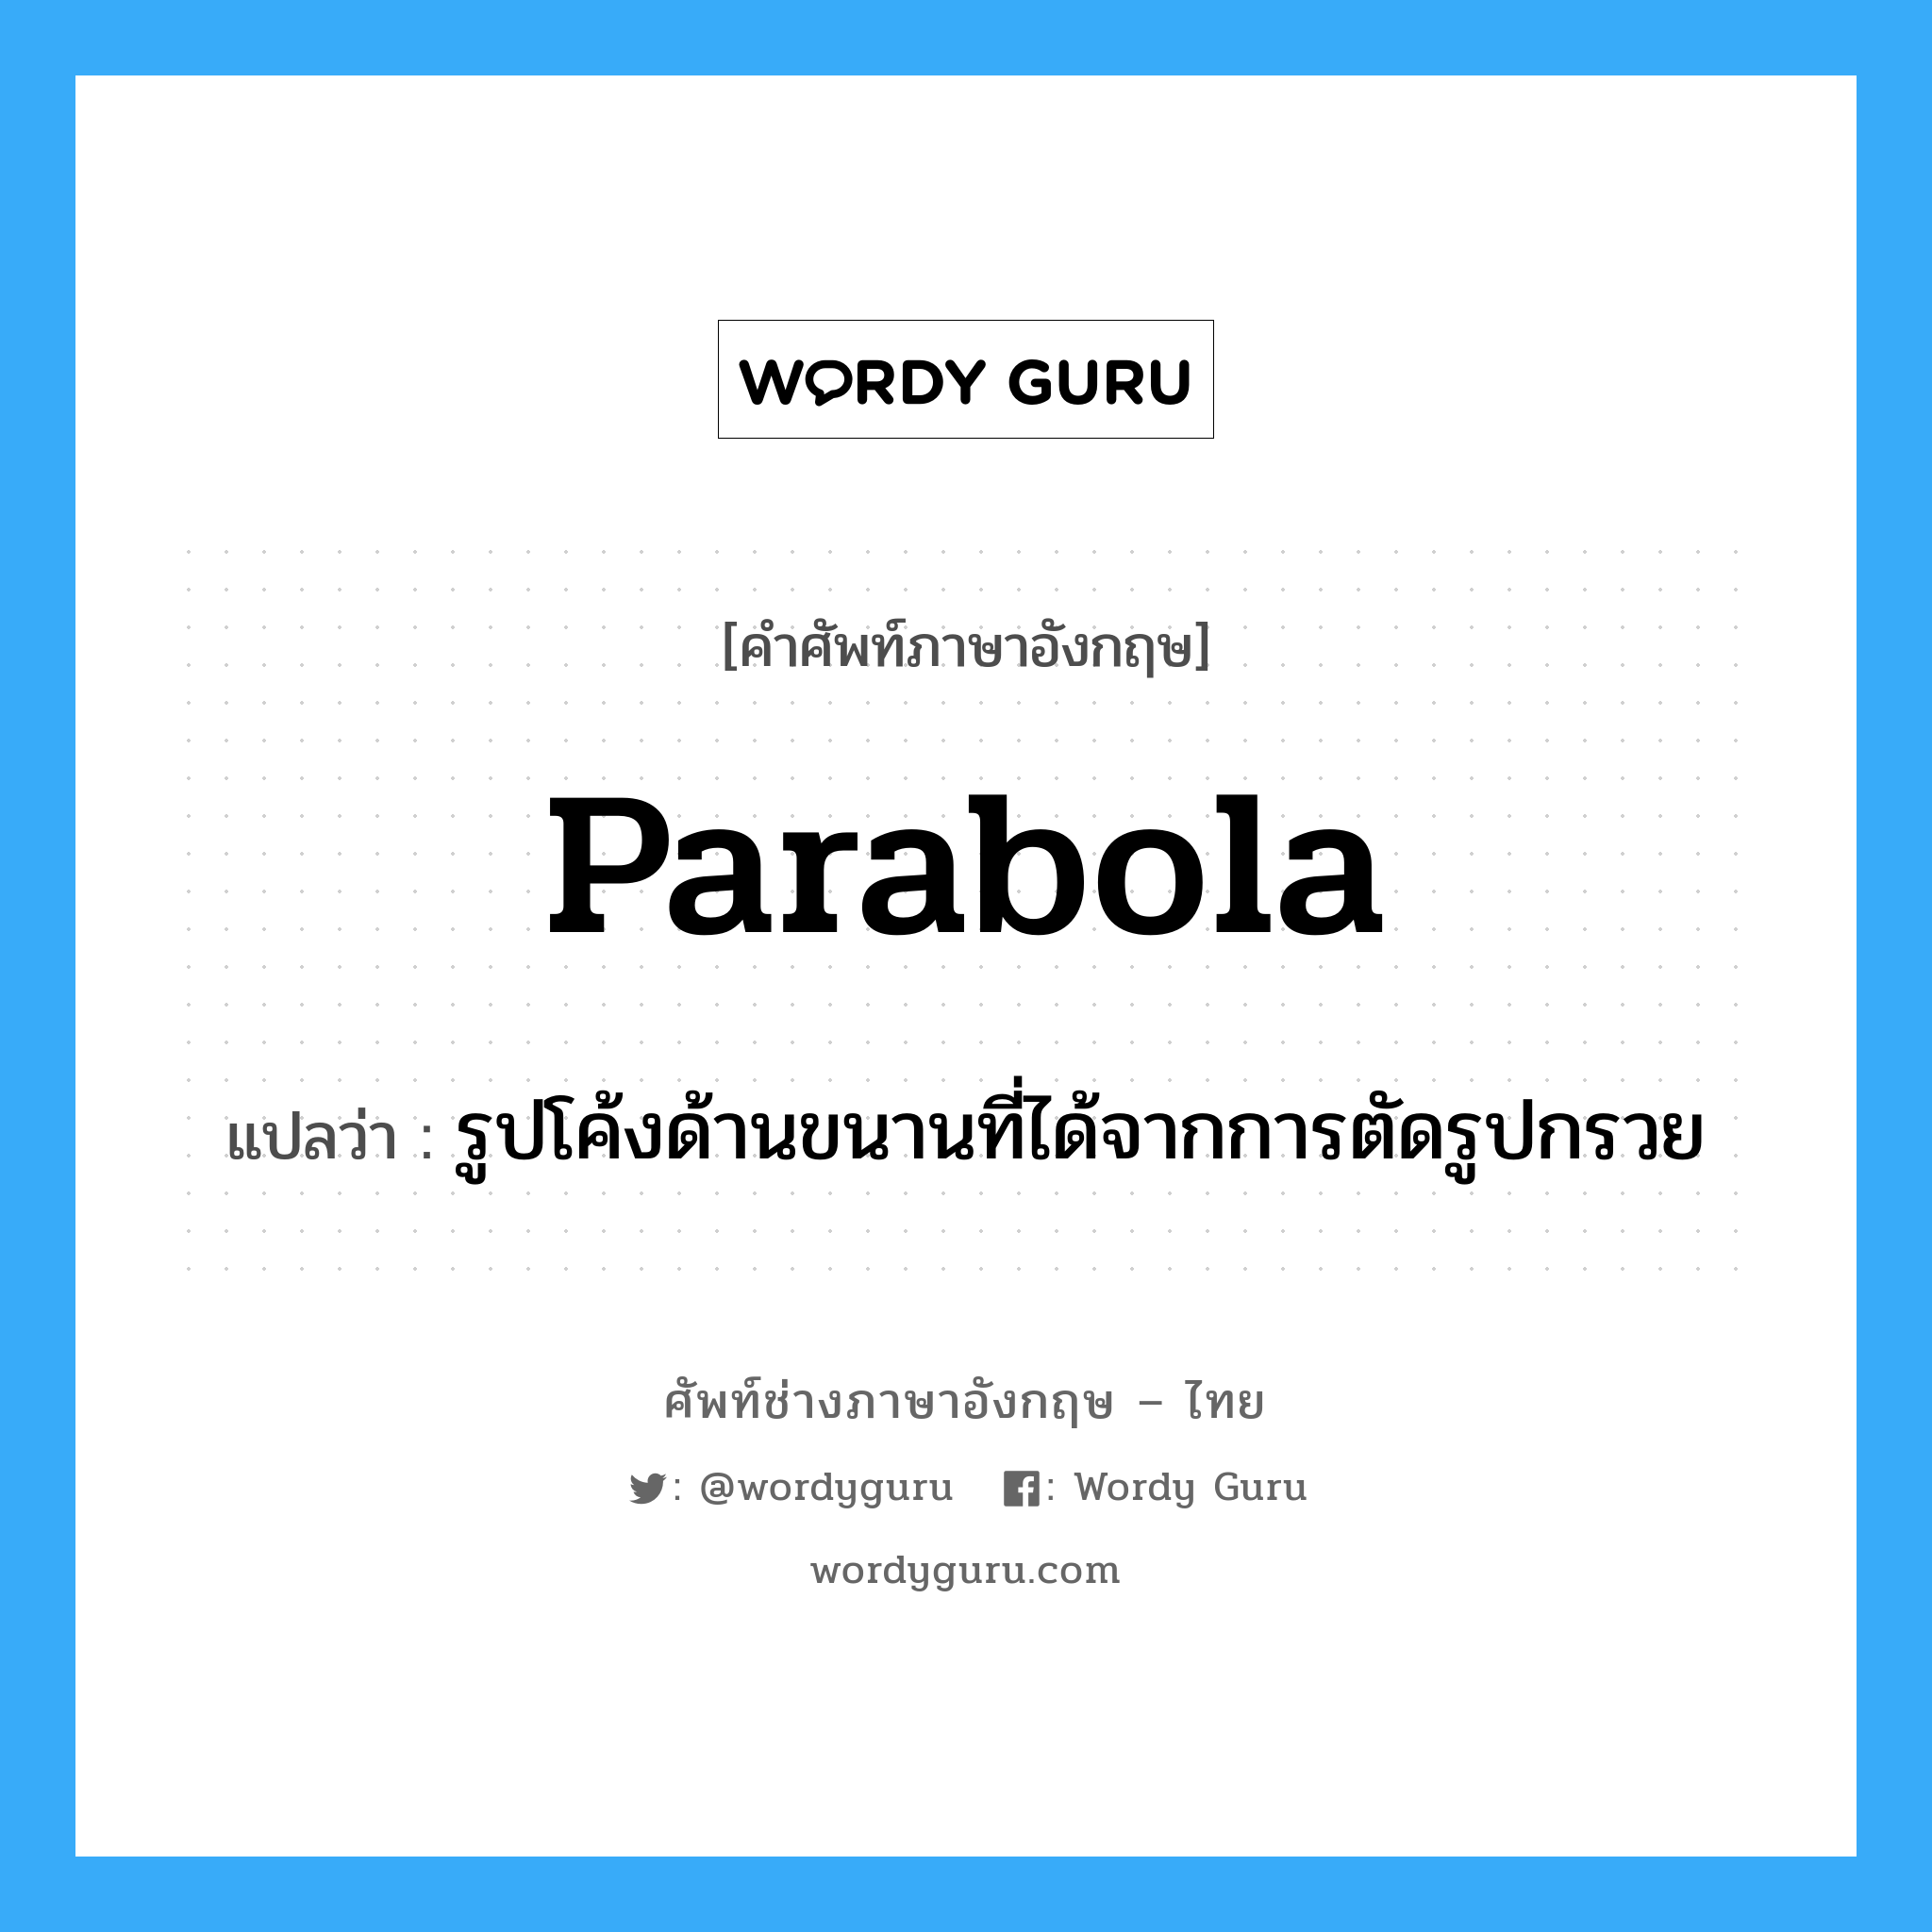 parabola แปลว่า?, คำศัพท์ช่างภาษาอังกฤษ - ไทย parabola คำศัพท์ภาษาอังกฤษ parabola แปลว่า รูปโค้งด้านขนานที่ได้จากการตัดรูปกรวย